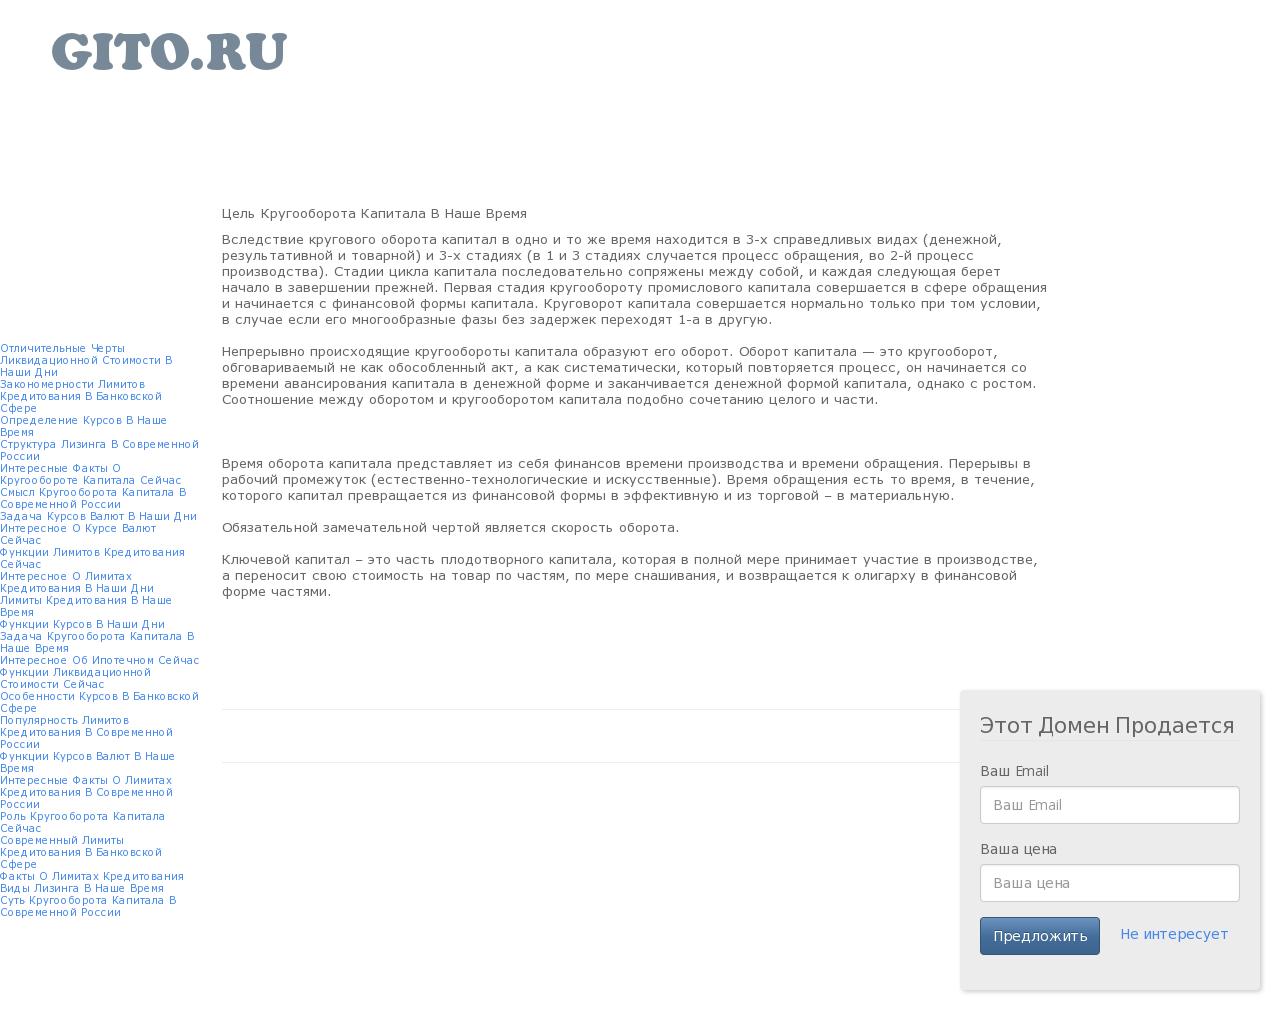 Изображение сайта gito.ru в разрешении 1280x1024